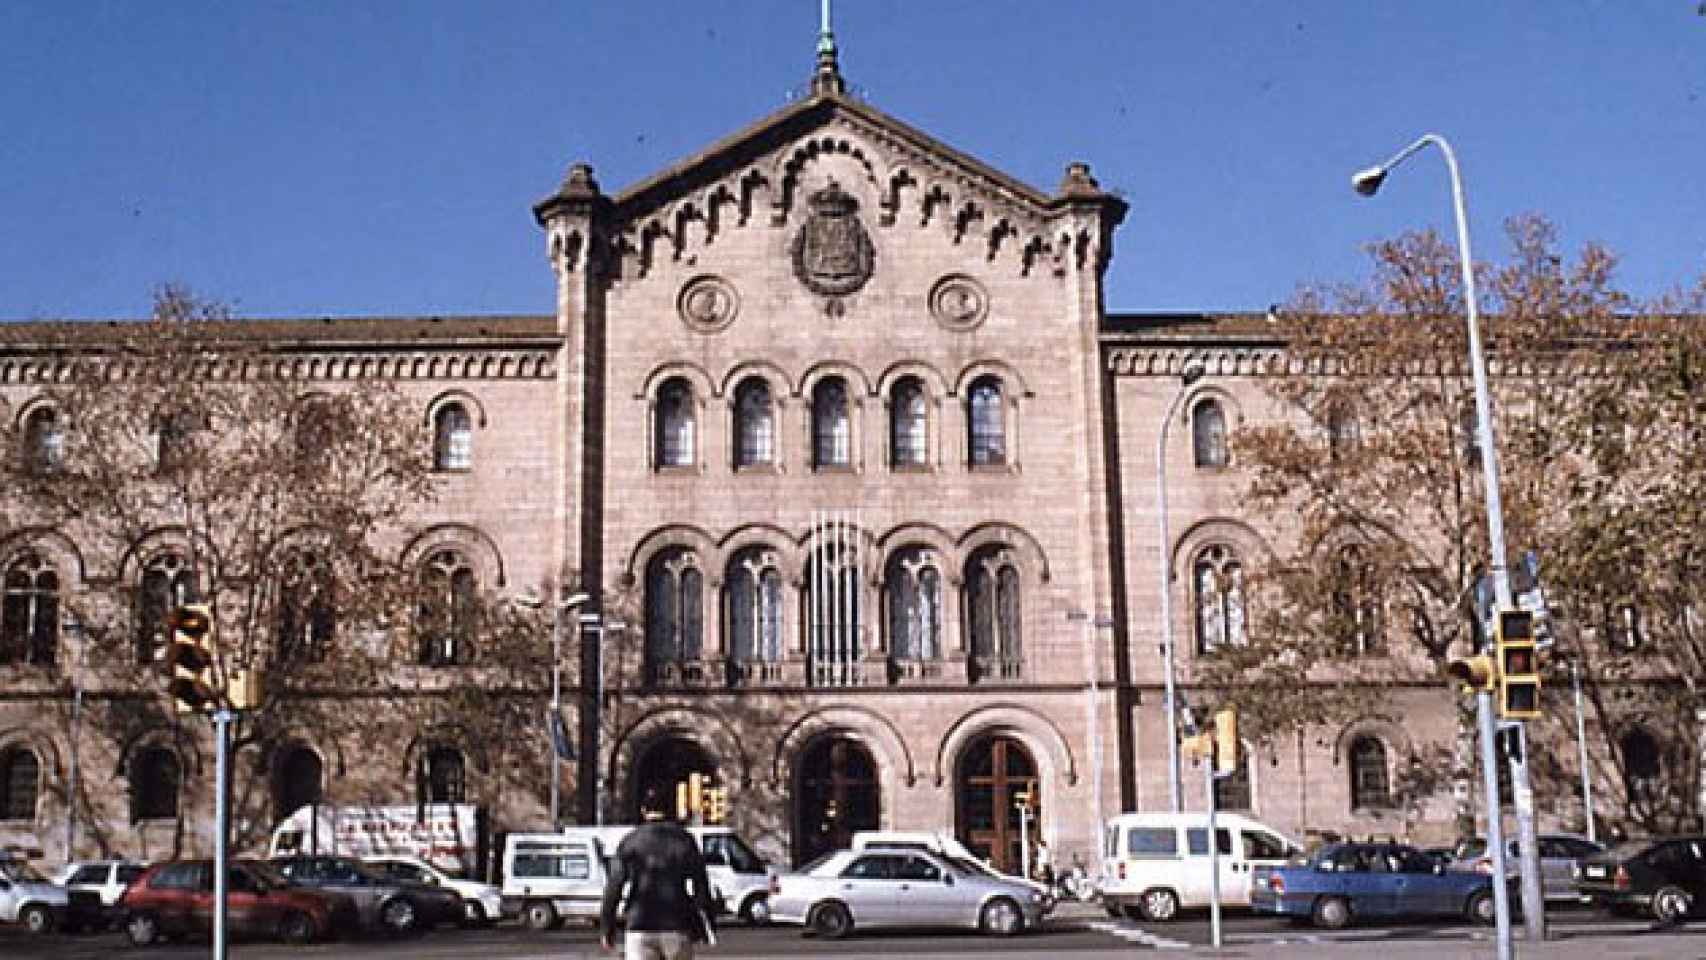 La fachada del edificio histórico de la Universidad de Barcelona en una imagen de archivo.